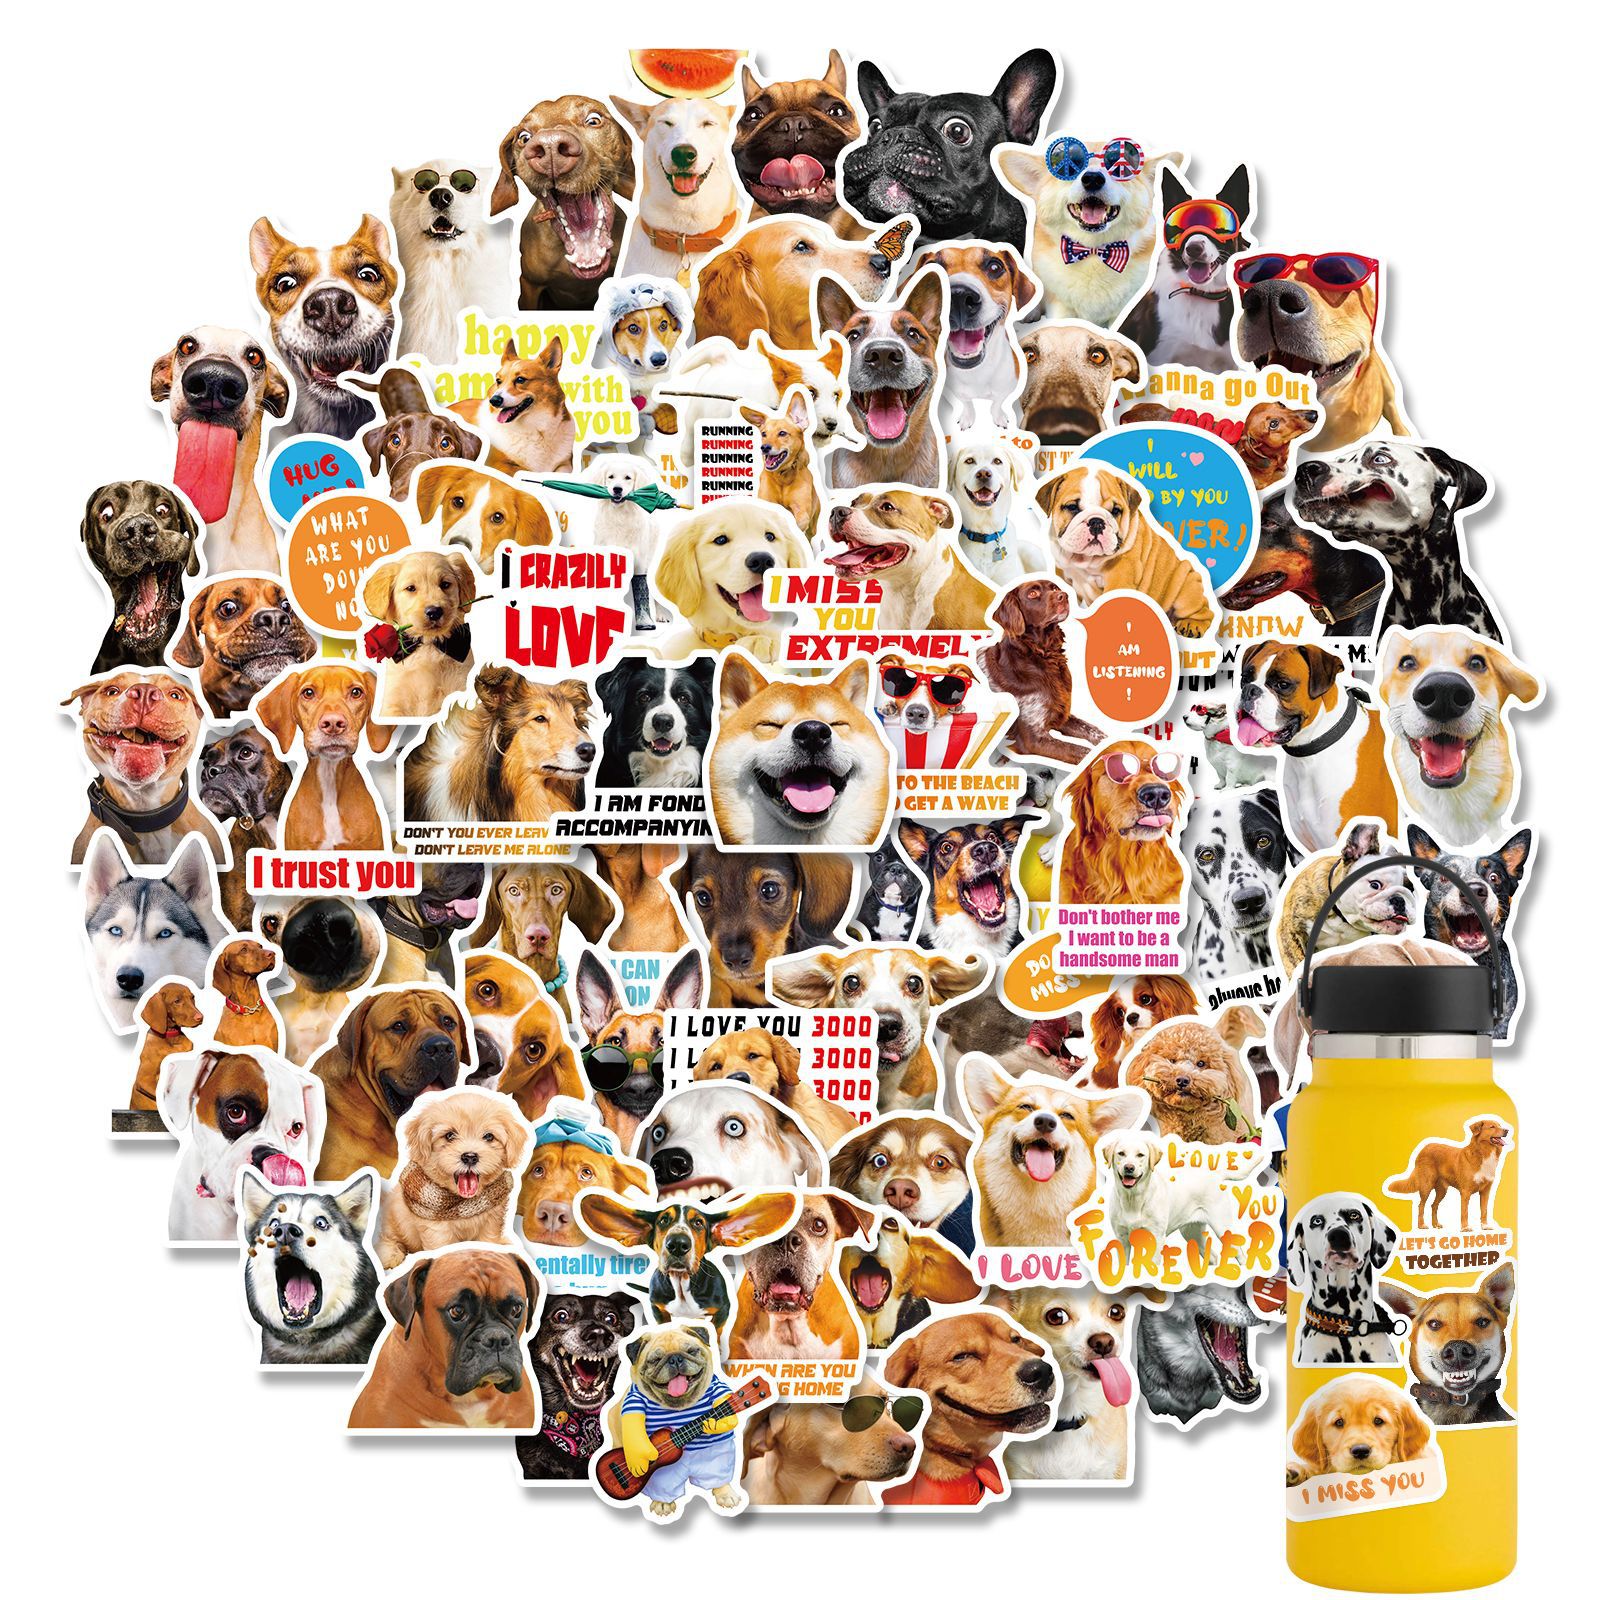 100张写实狗贴纸 狗狗表情包贴纸 不重复搞笑沙雕小狗装饰小贴画